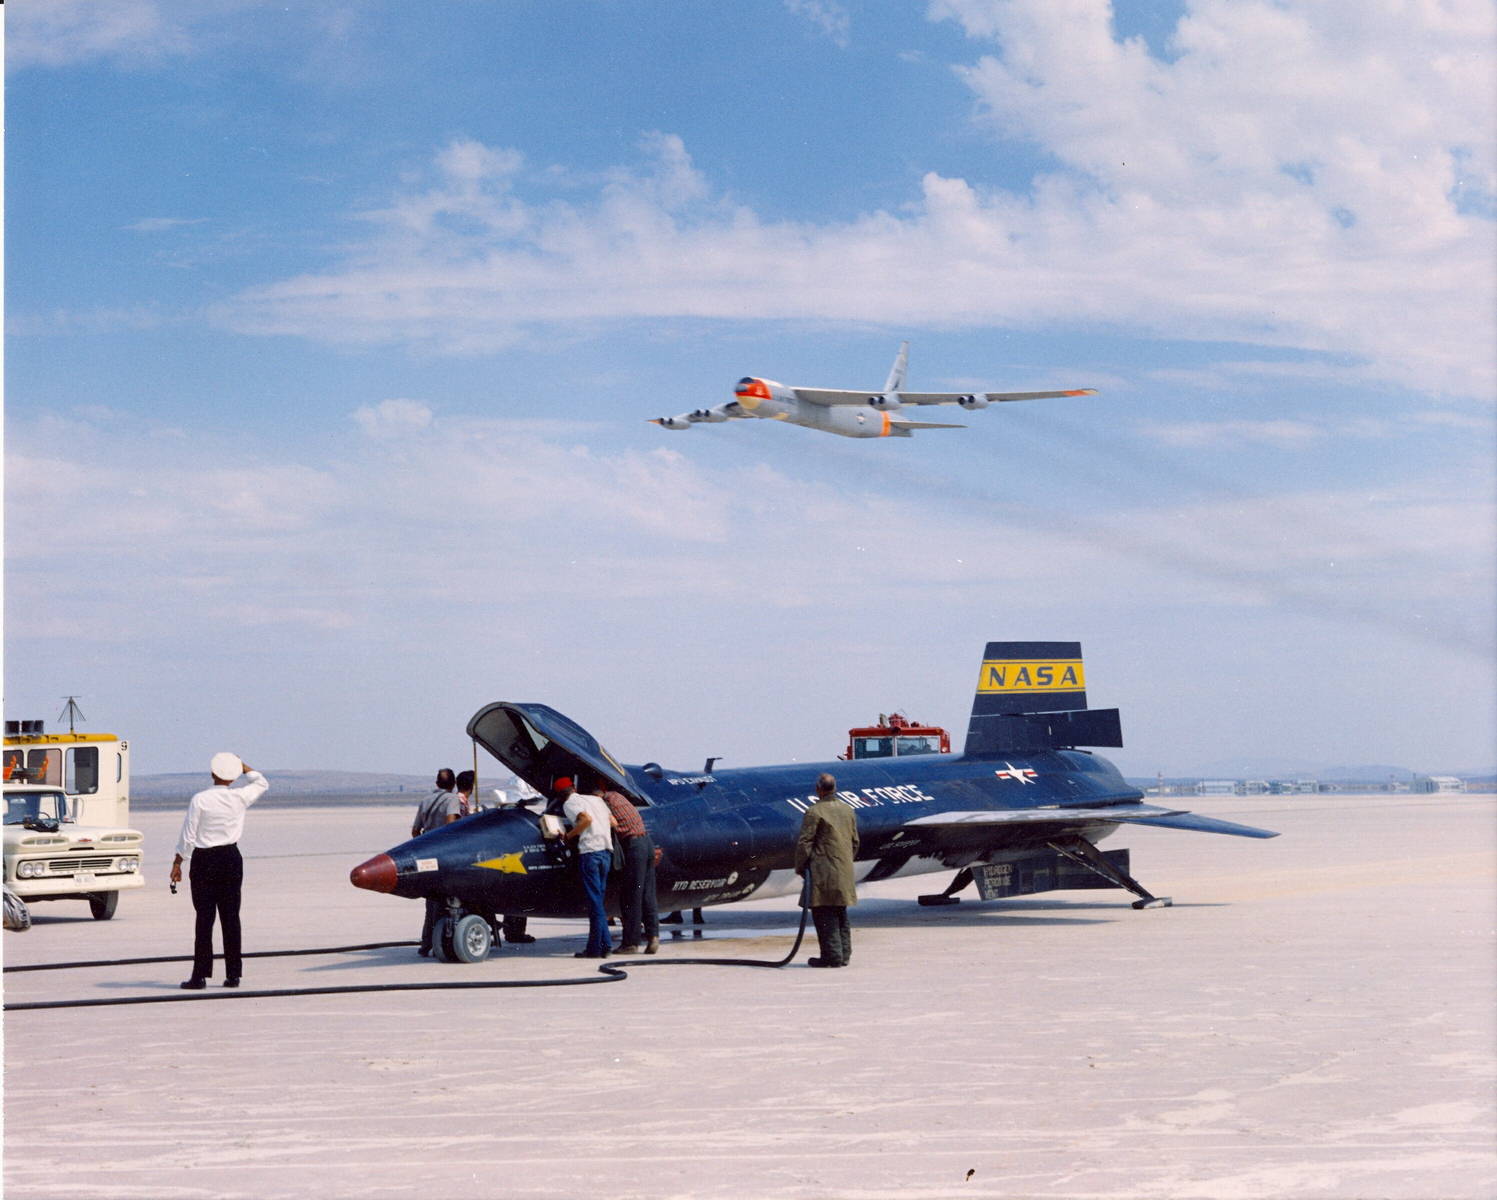 A sikeresen földetért X-15-öst üdvözli az alacsonyan áthúzó hordozó, a B-52-es